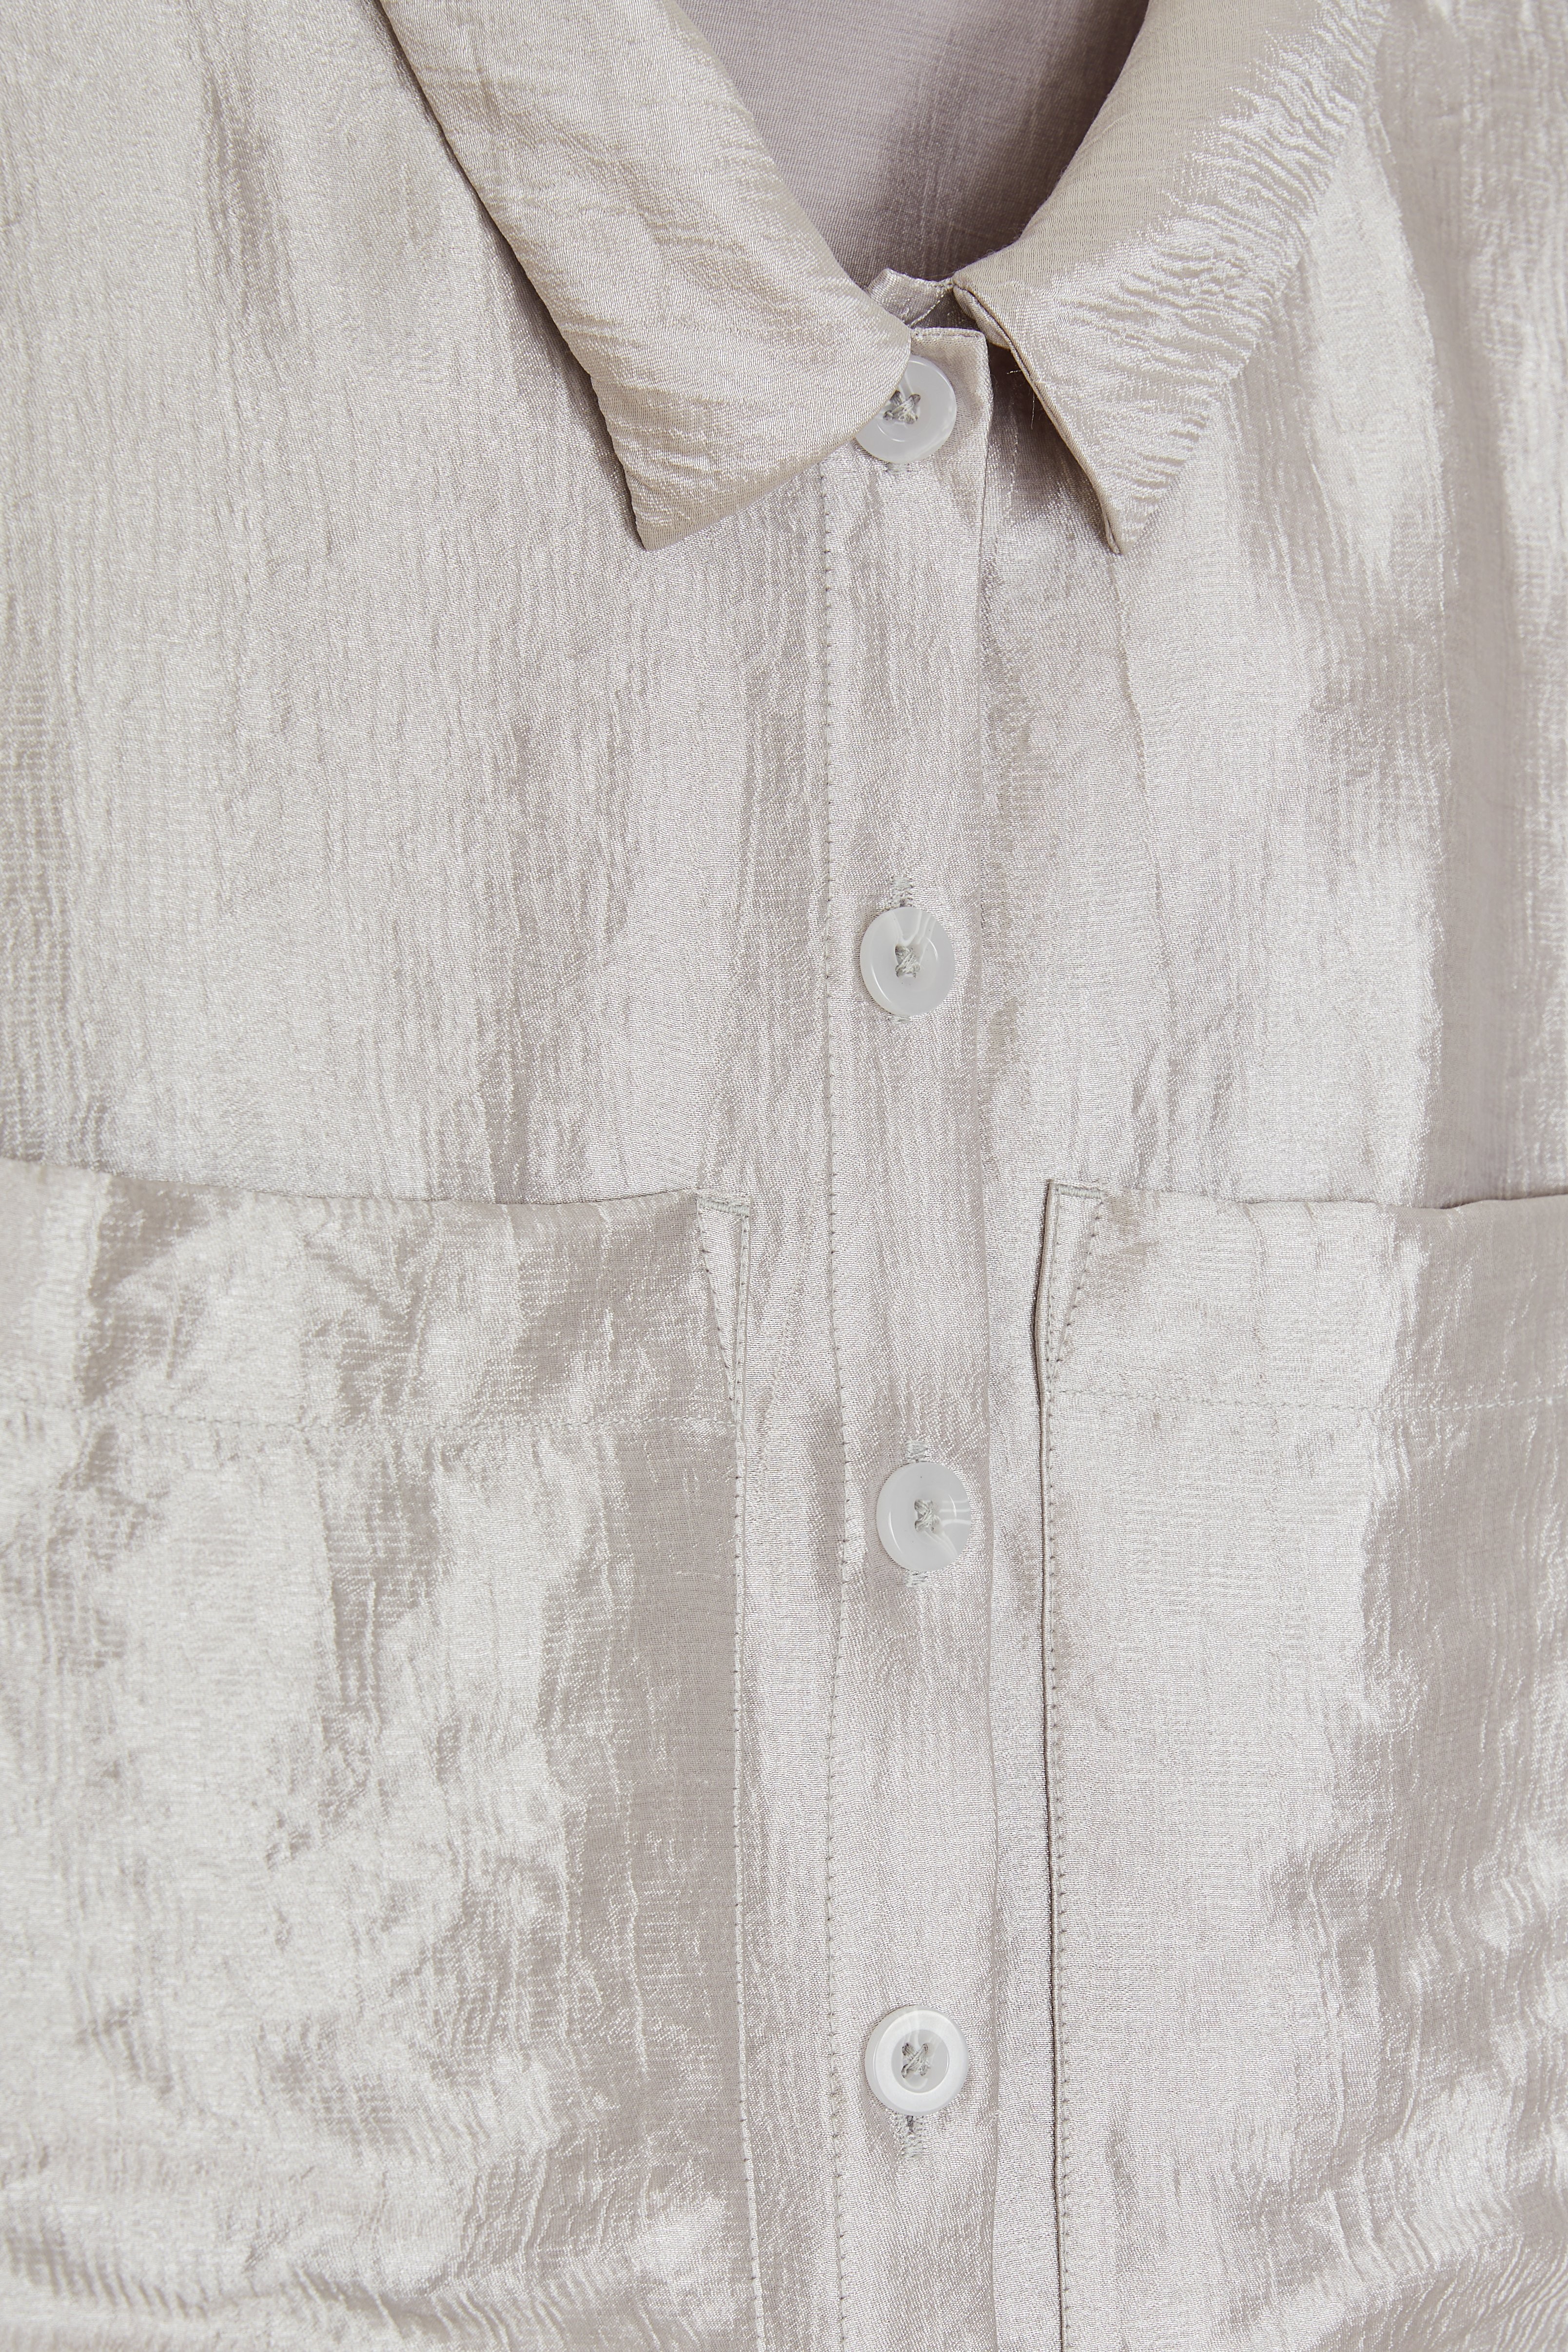 CKS Dames - SELINOS - blouse short sleeves - grey